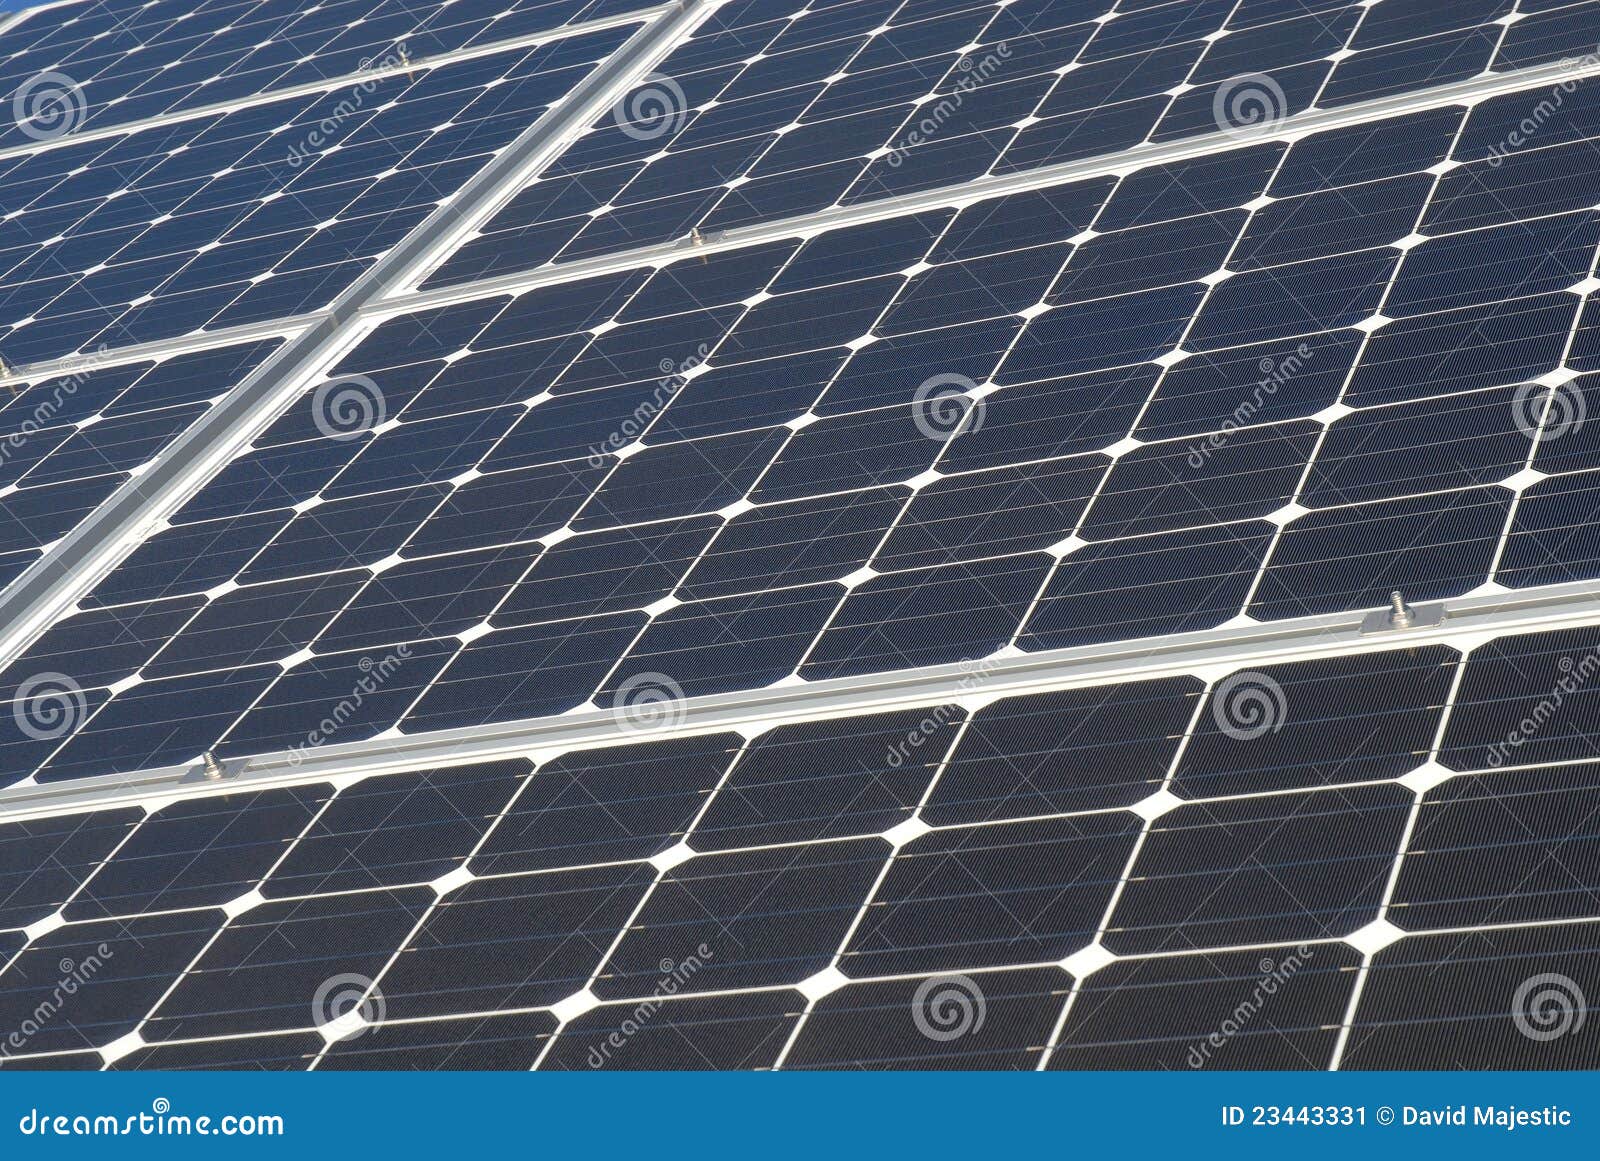 Potência solar. Painel solar agrupado junto no sol brilhante